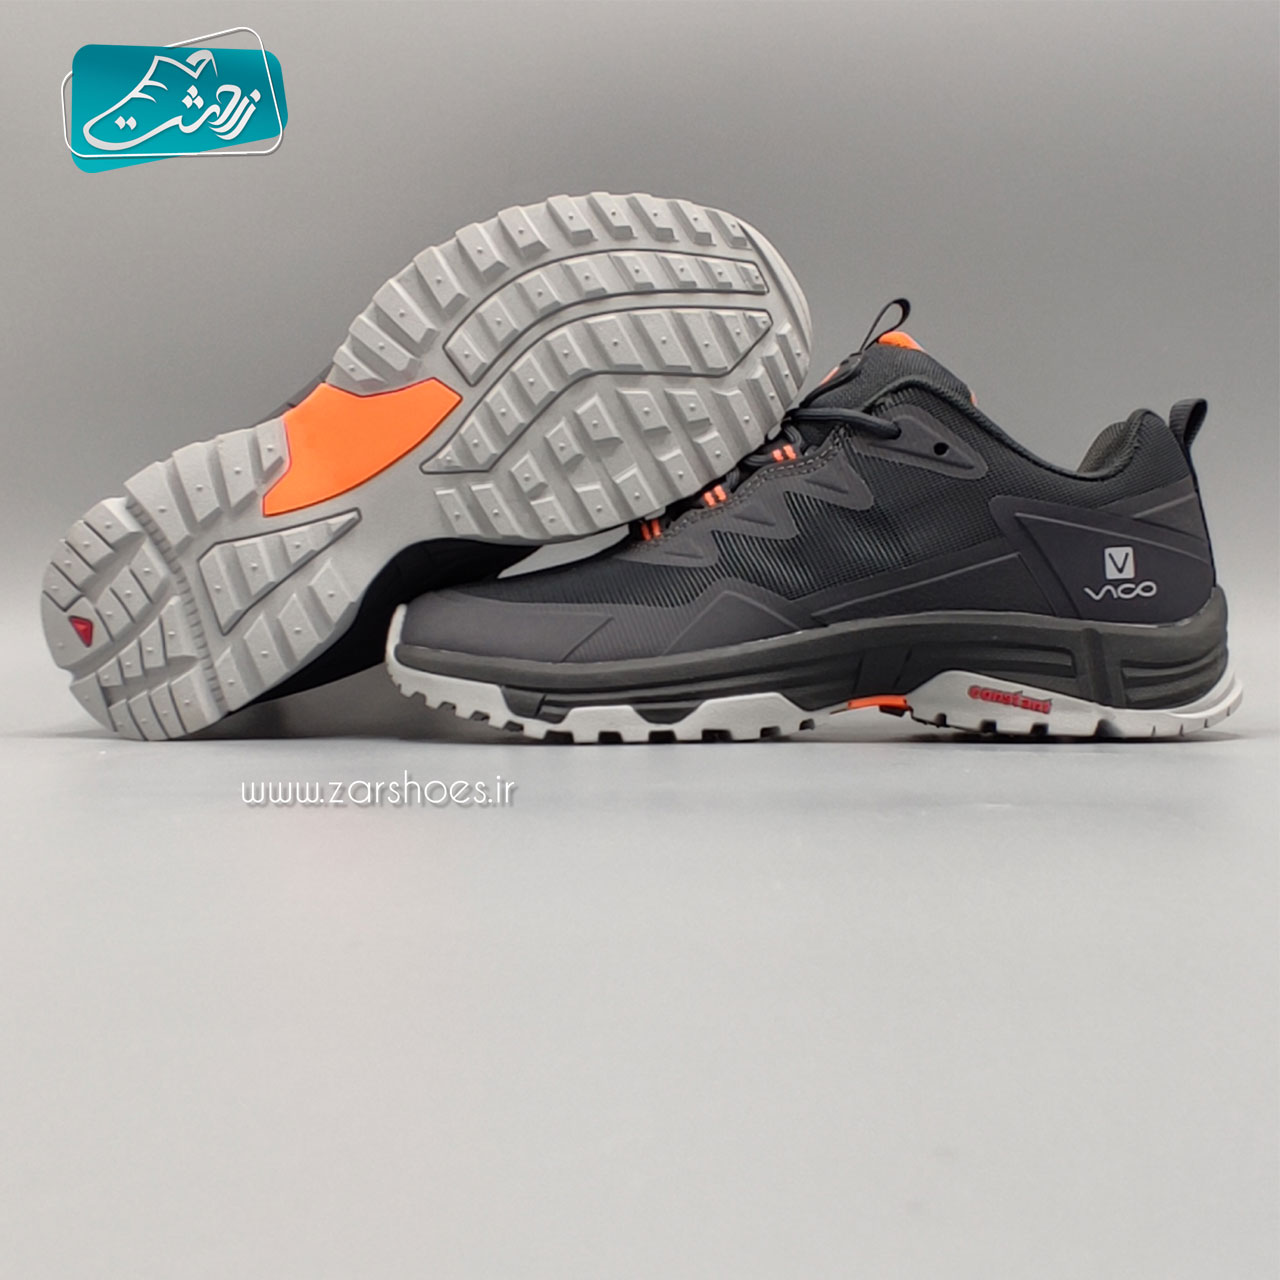 کفش مخصوص پیاده روی مردانه ویکو مدل R3116 M7-11797